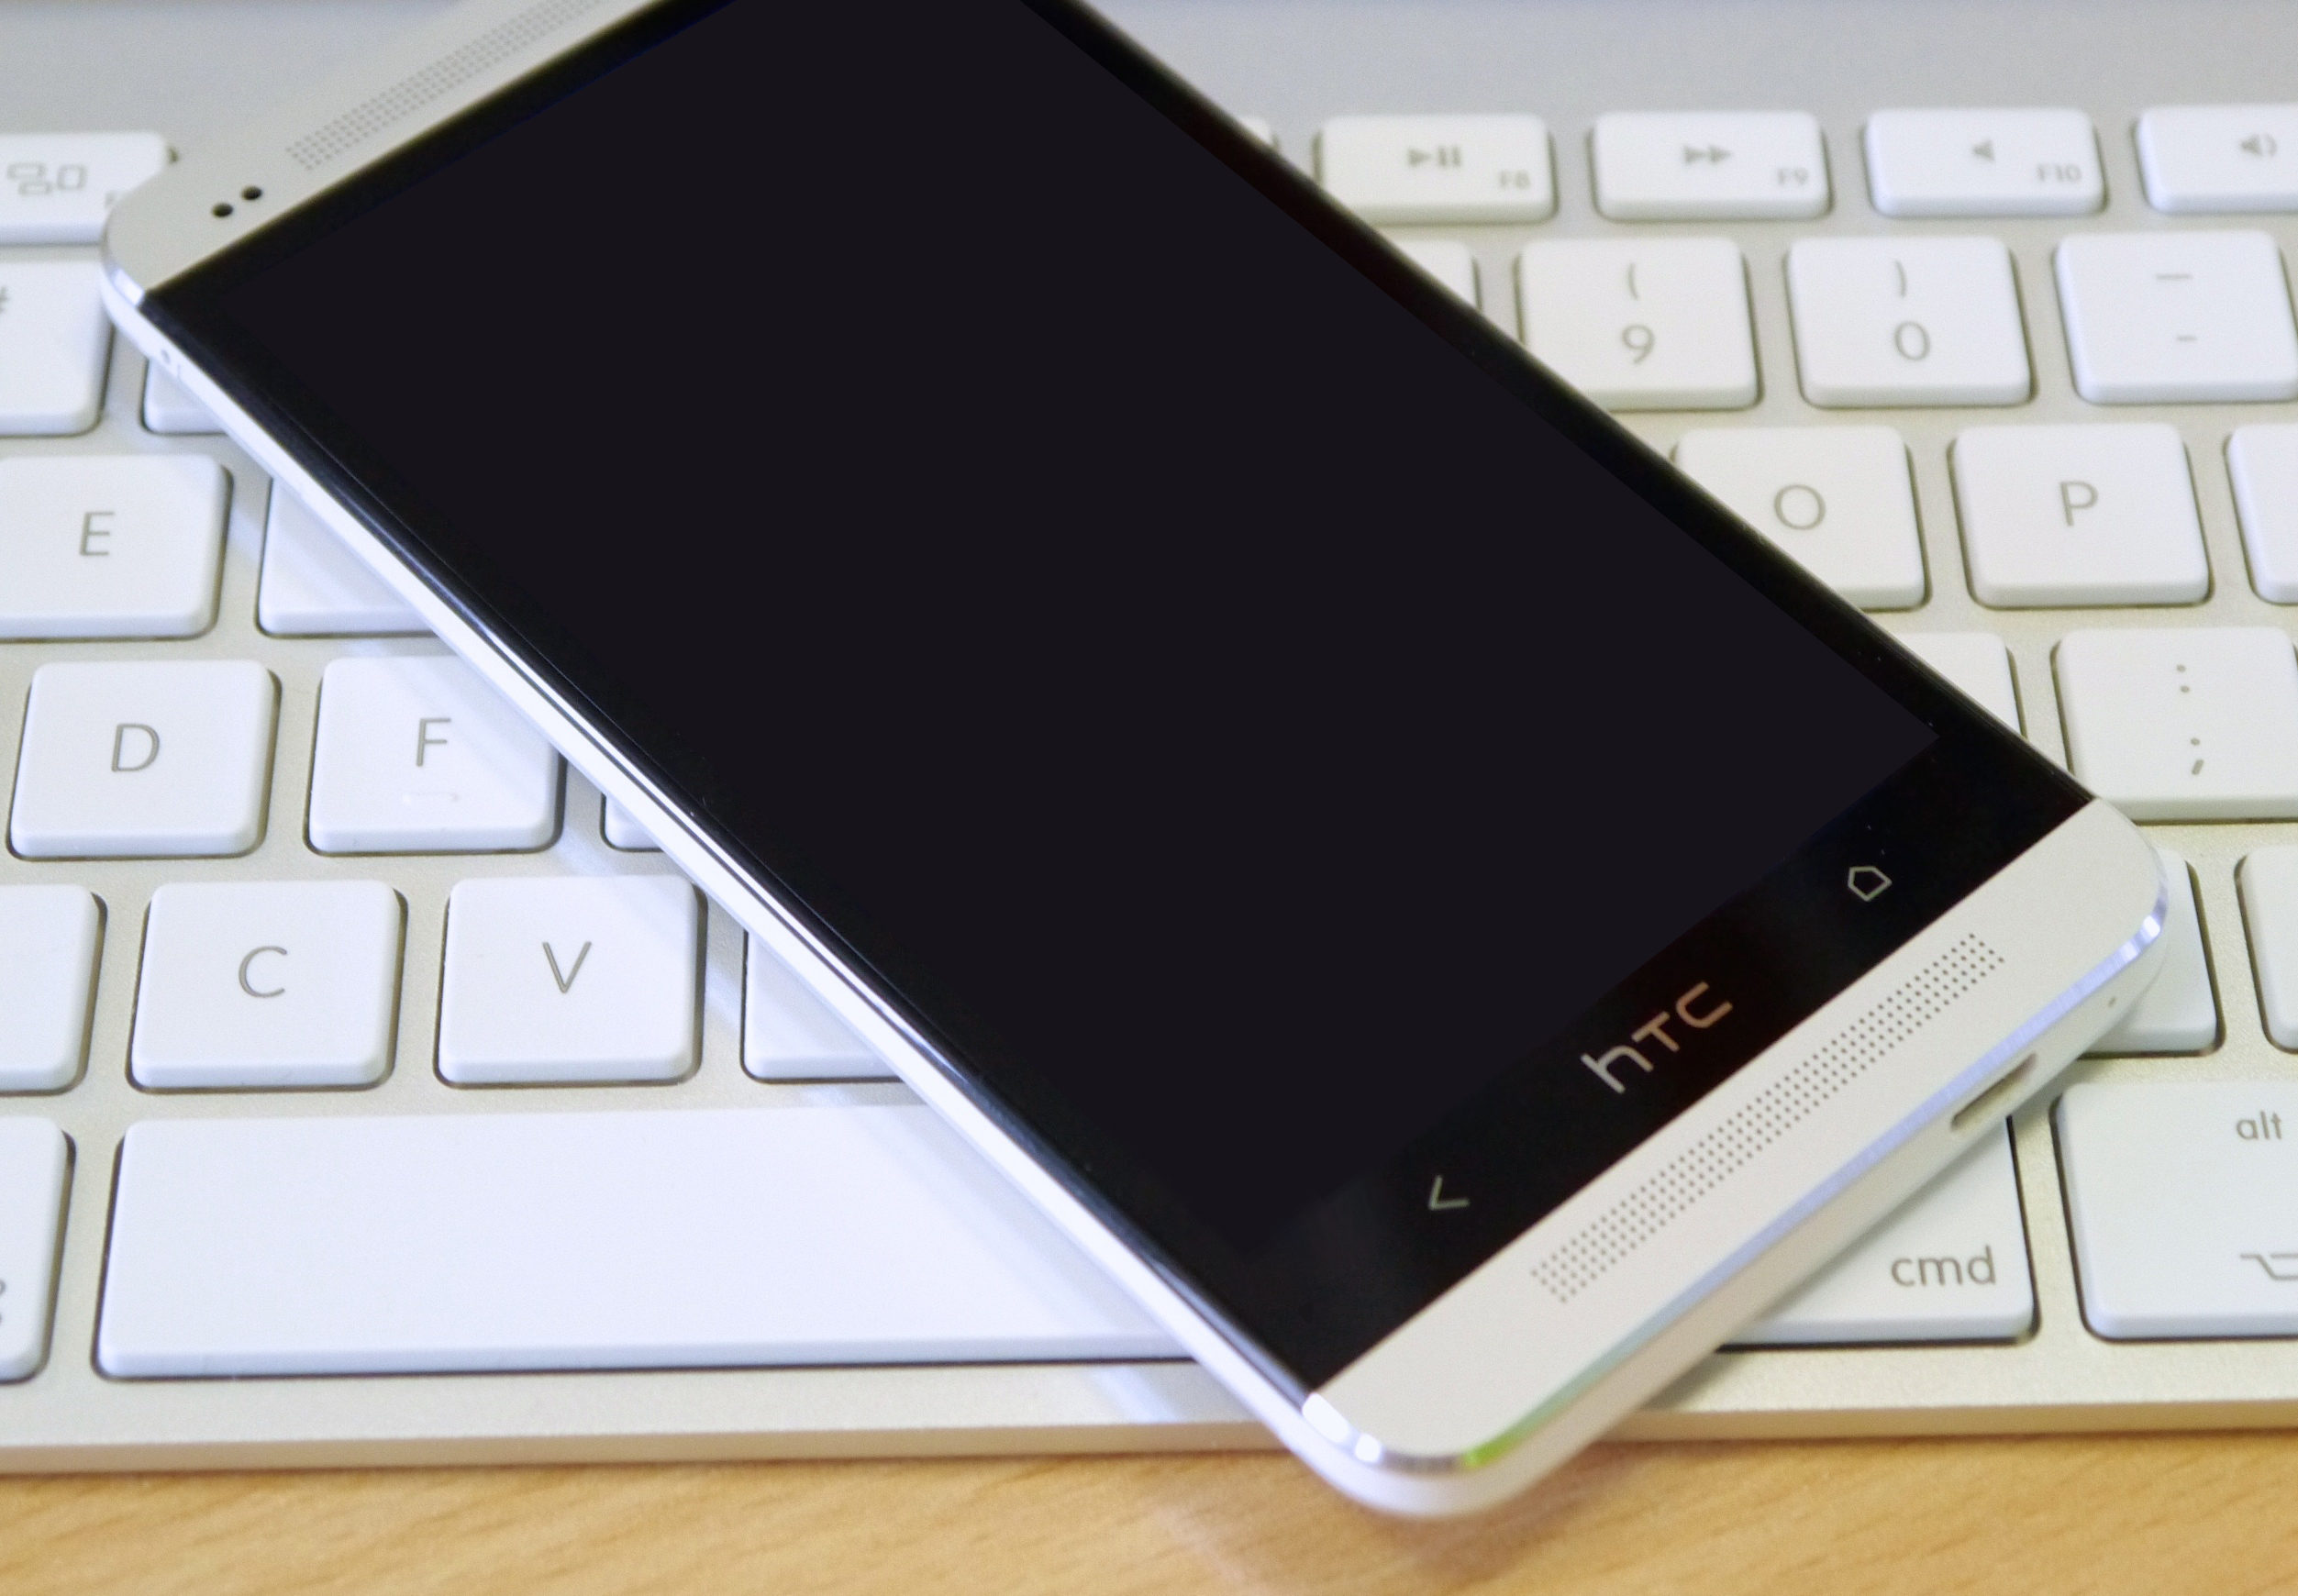 Sửa điện thoại HTC One M7 mất nguồn: Cần tìm địa chỉ có kỹ thuật tay nghề cao.